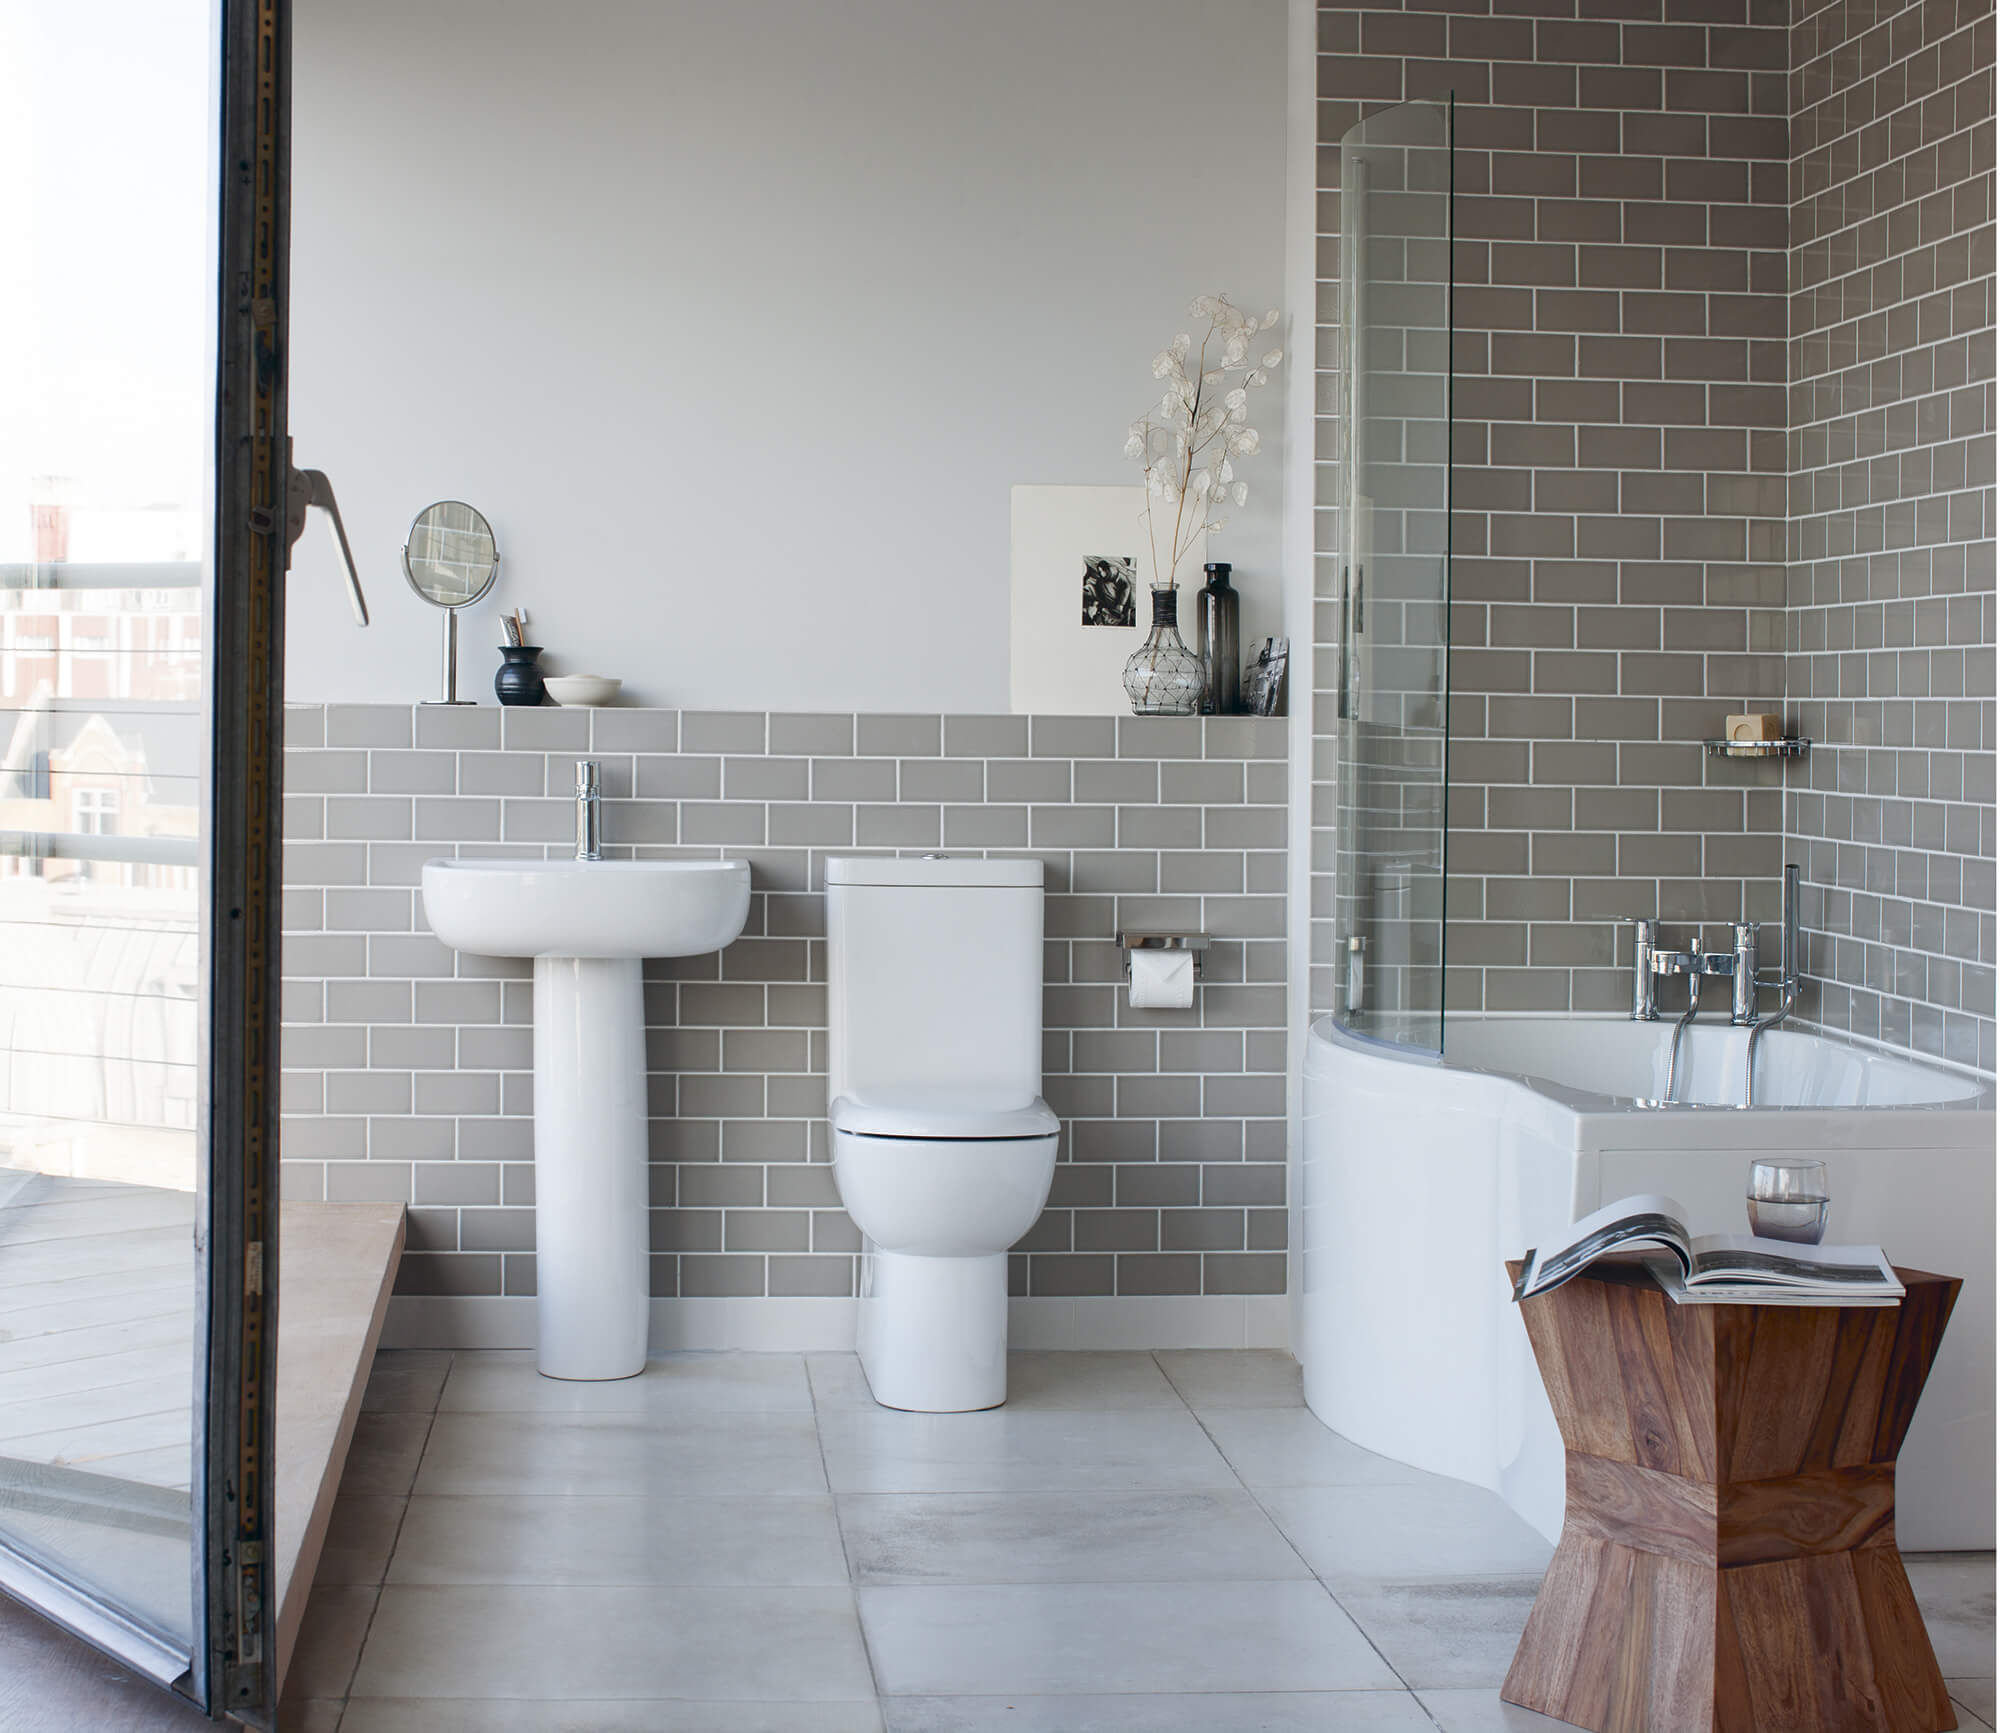 Design Guide: Small Bathrooms - Build It